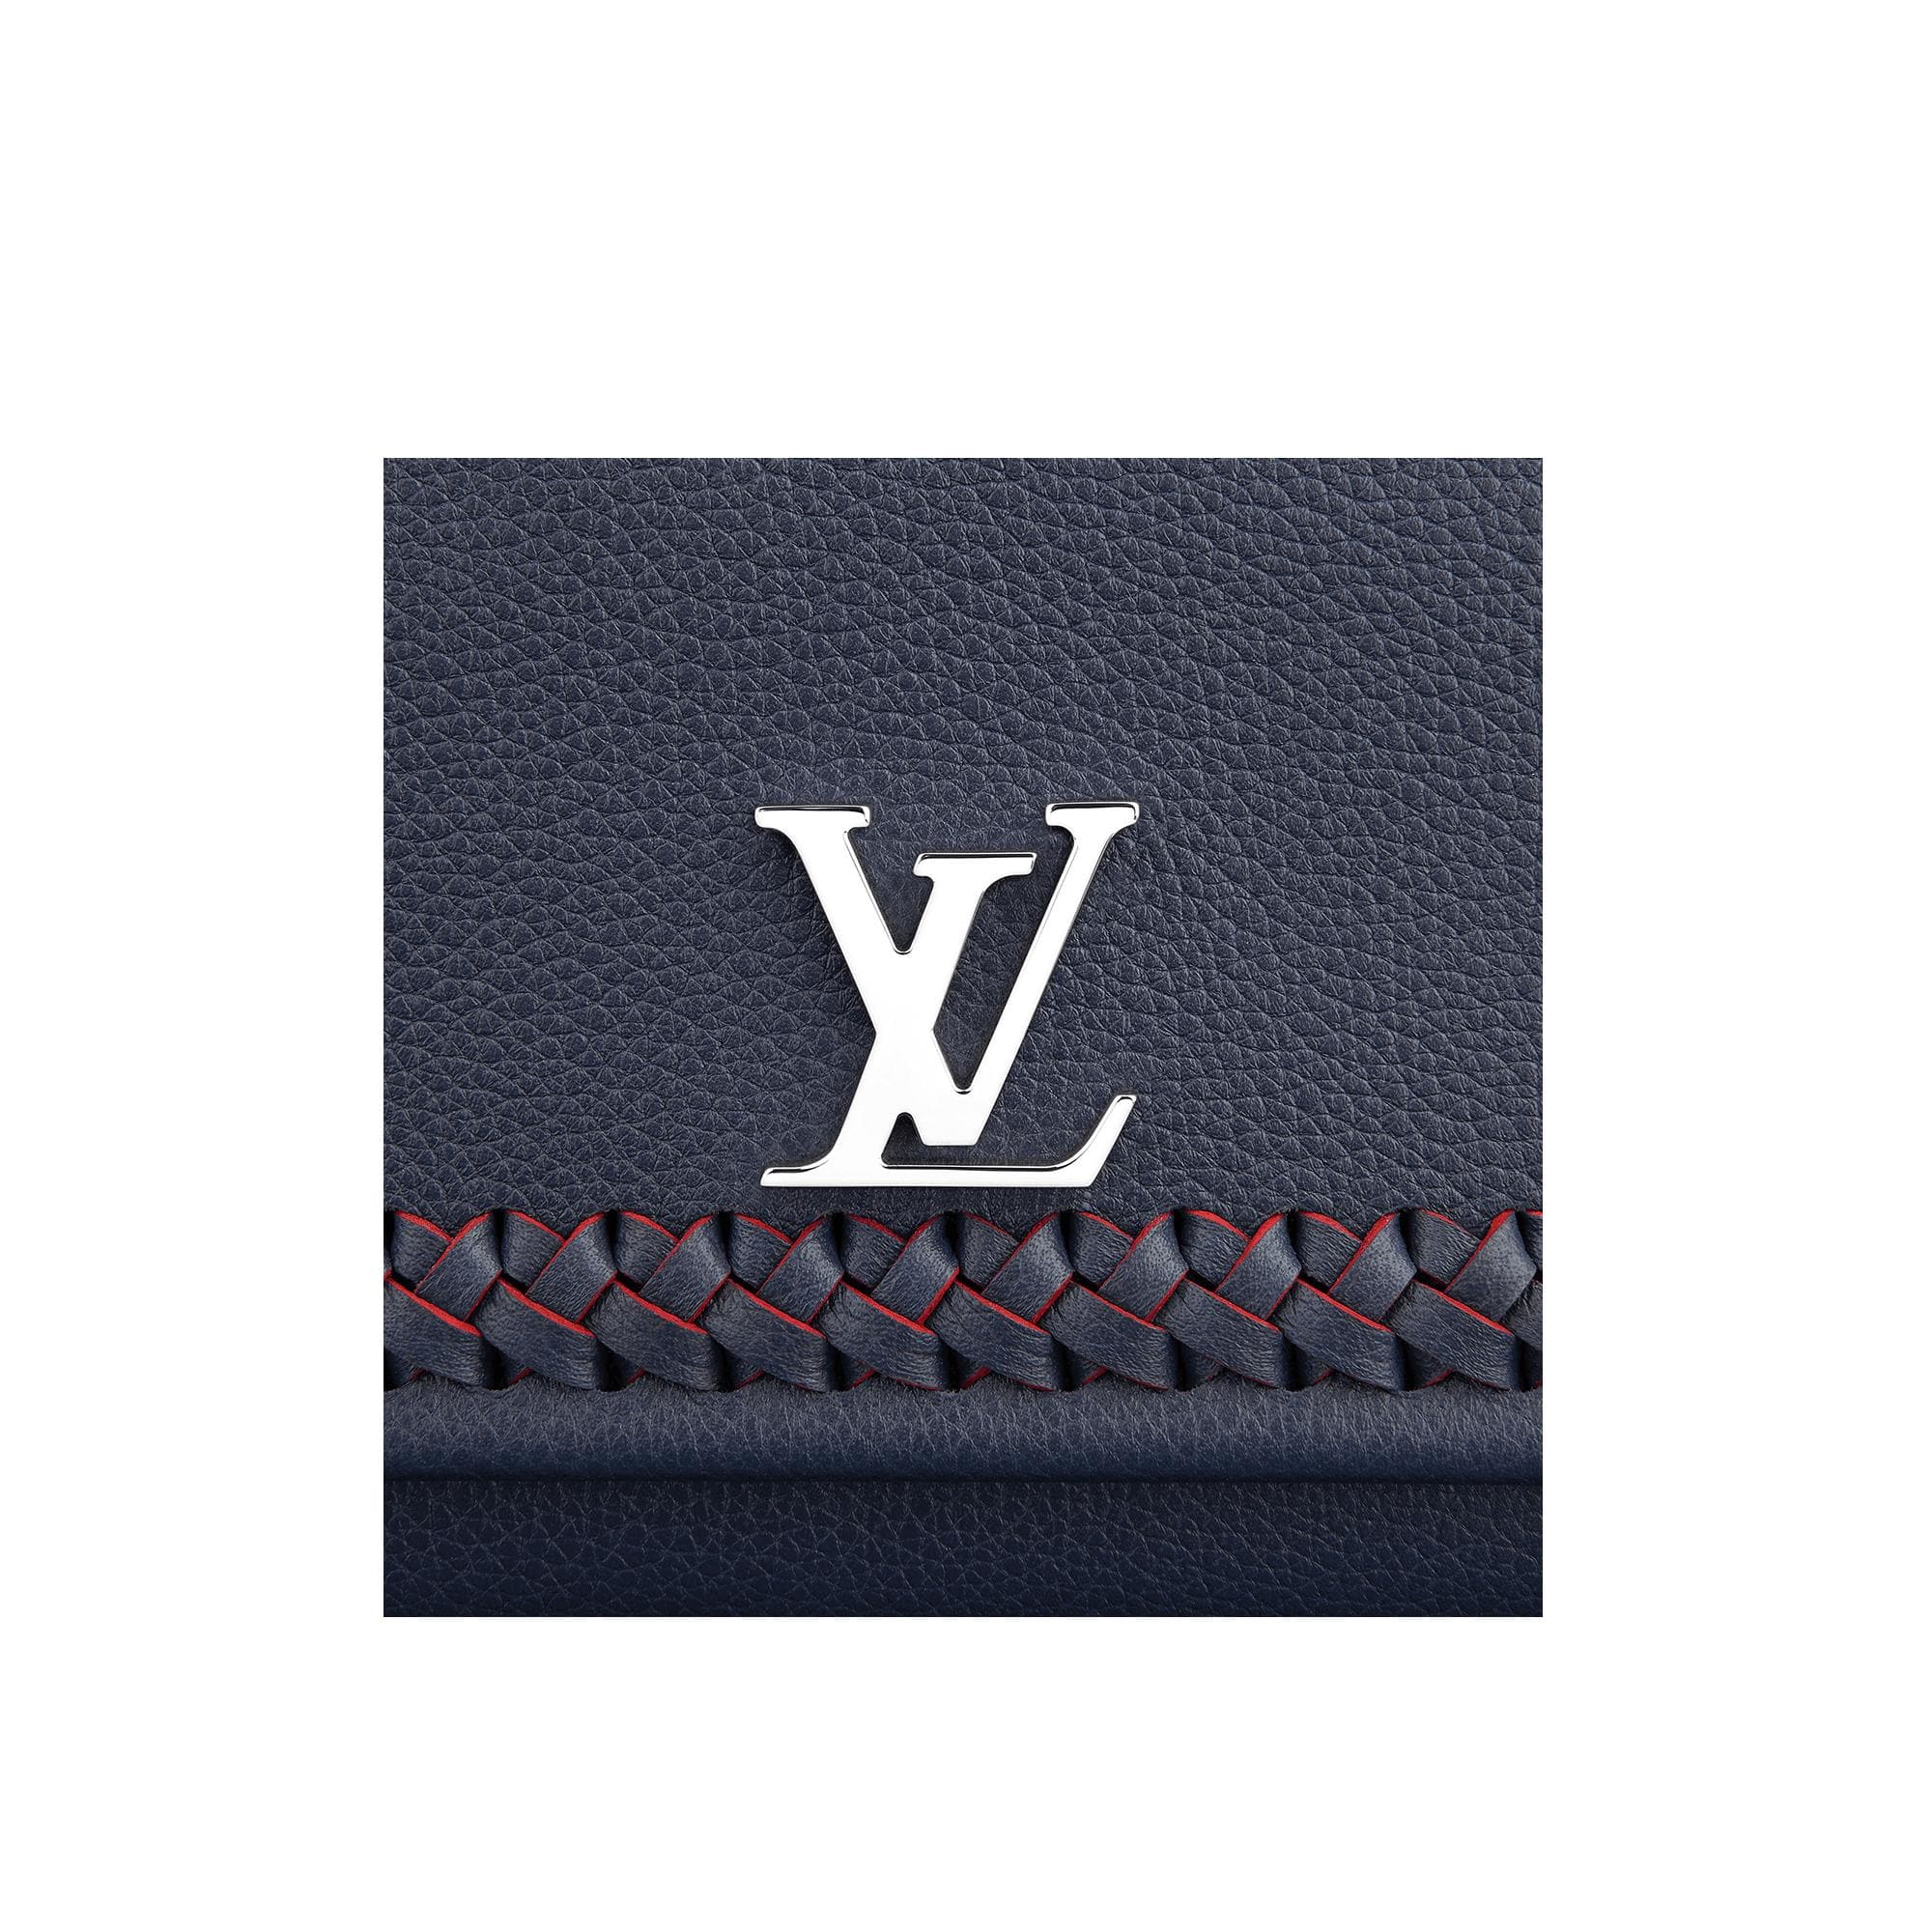 Small Louis Vuitton Logo - LogoDix